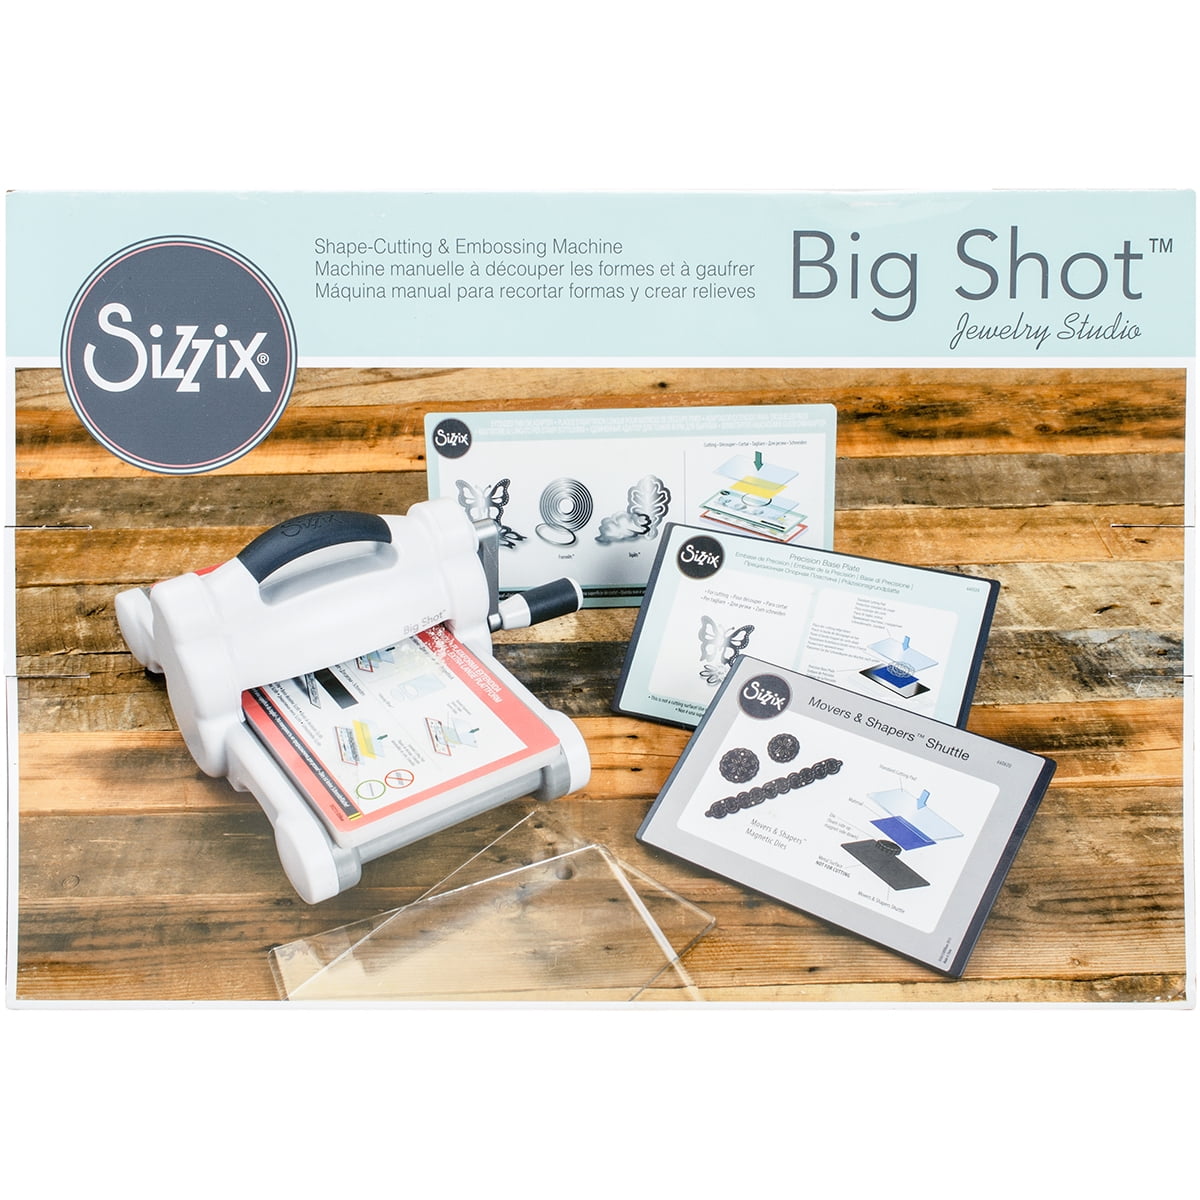 Sizzix • Big Shot Plus A4